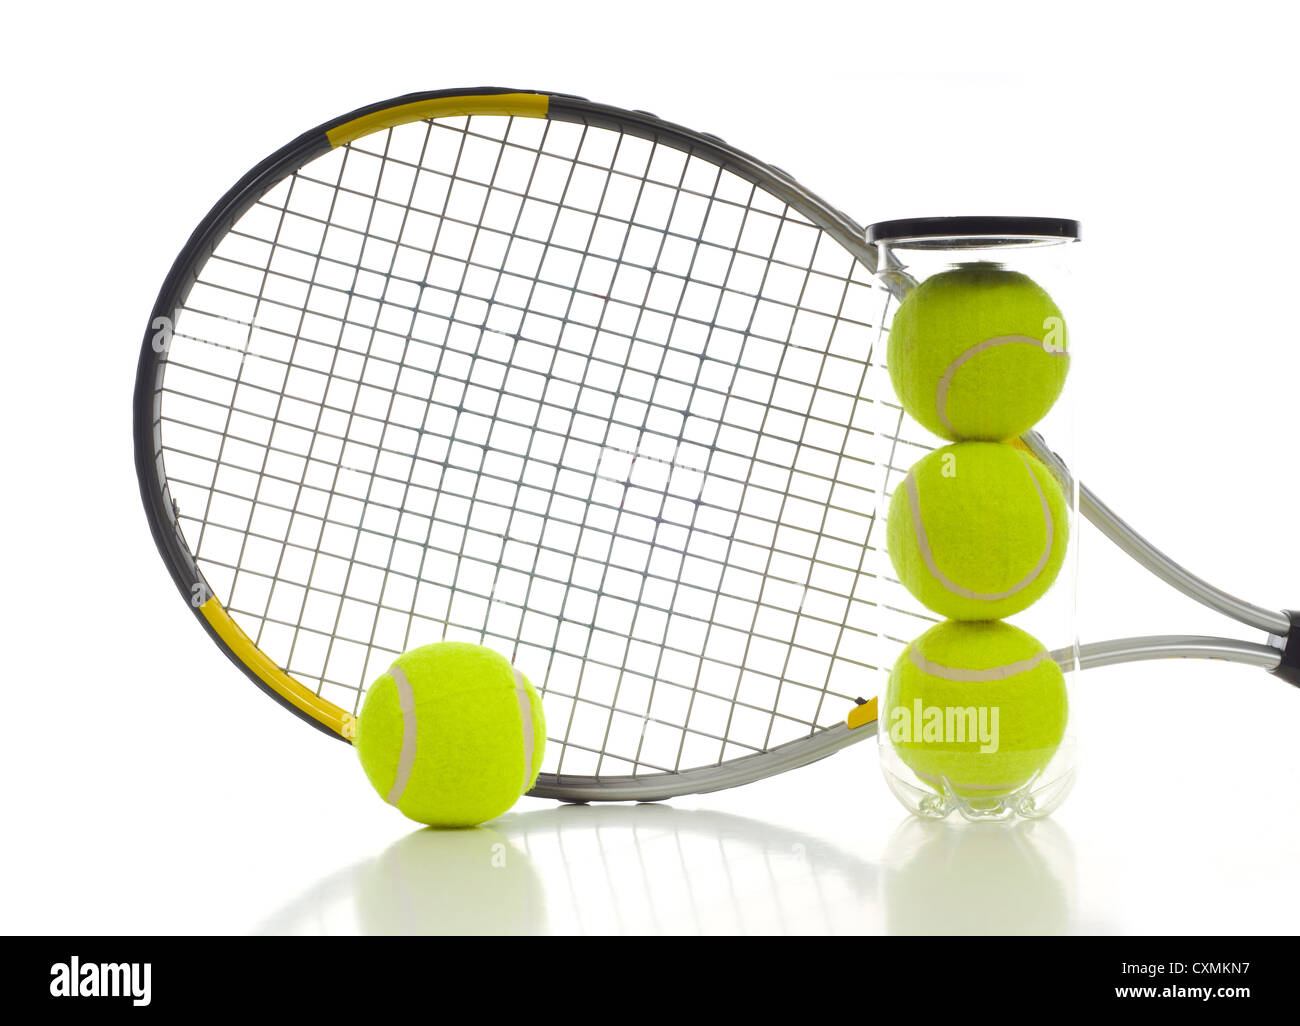 Nuova palla da tennis e una racchetta da tennis su sfondo bianco con spazio di copia Foto Stock